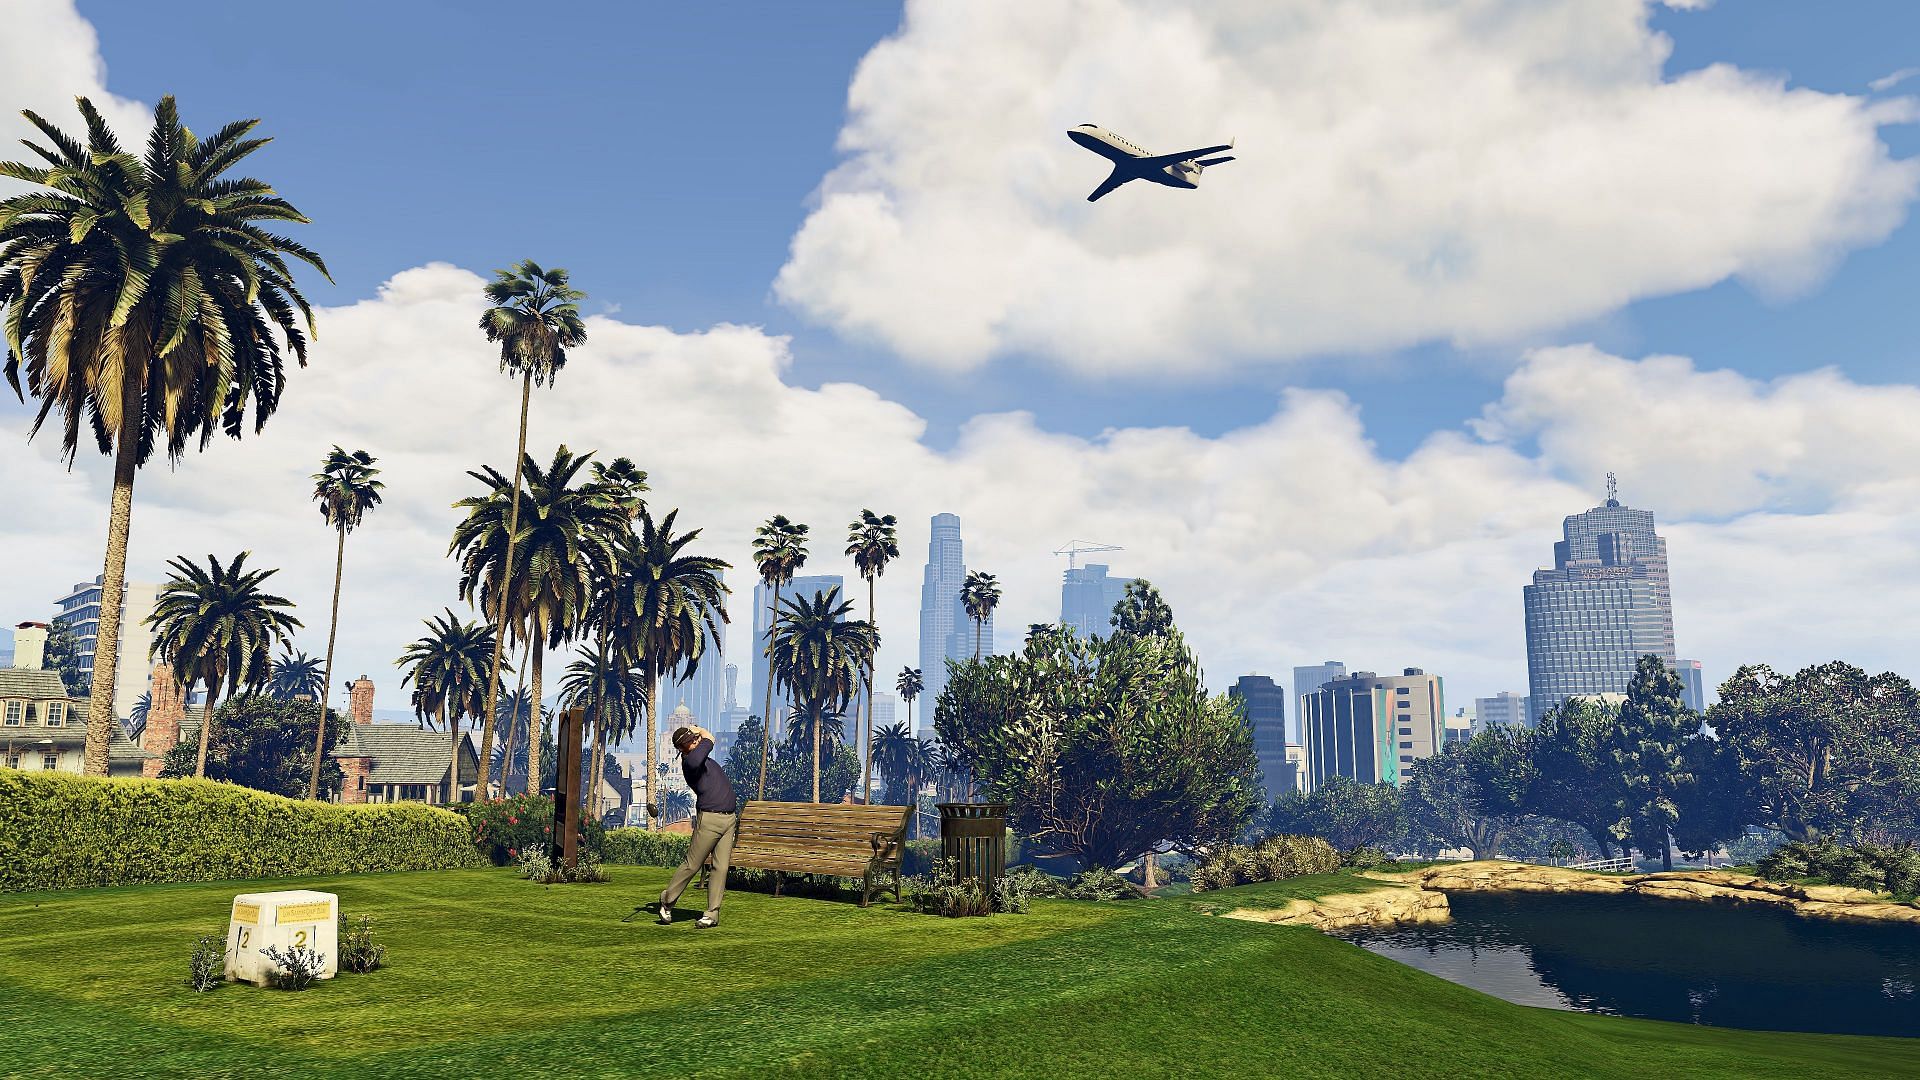 The Los Santos Golf Club (Image via Rockstar Games)